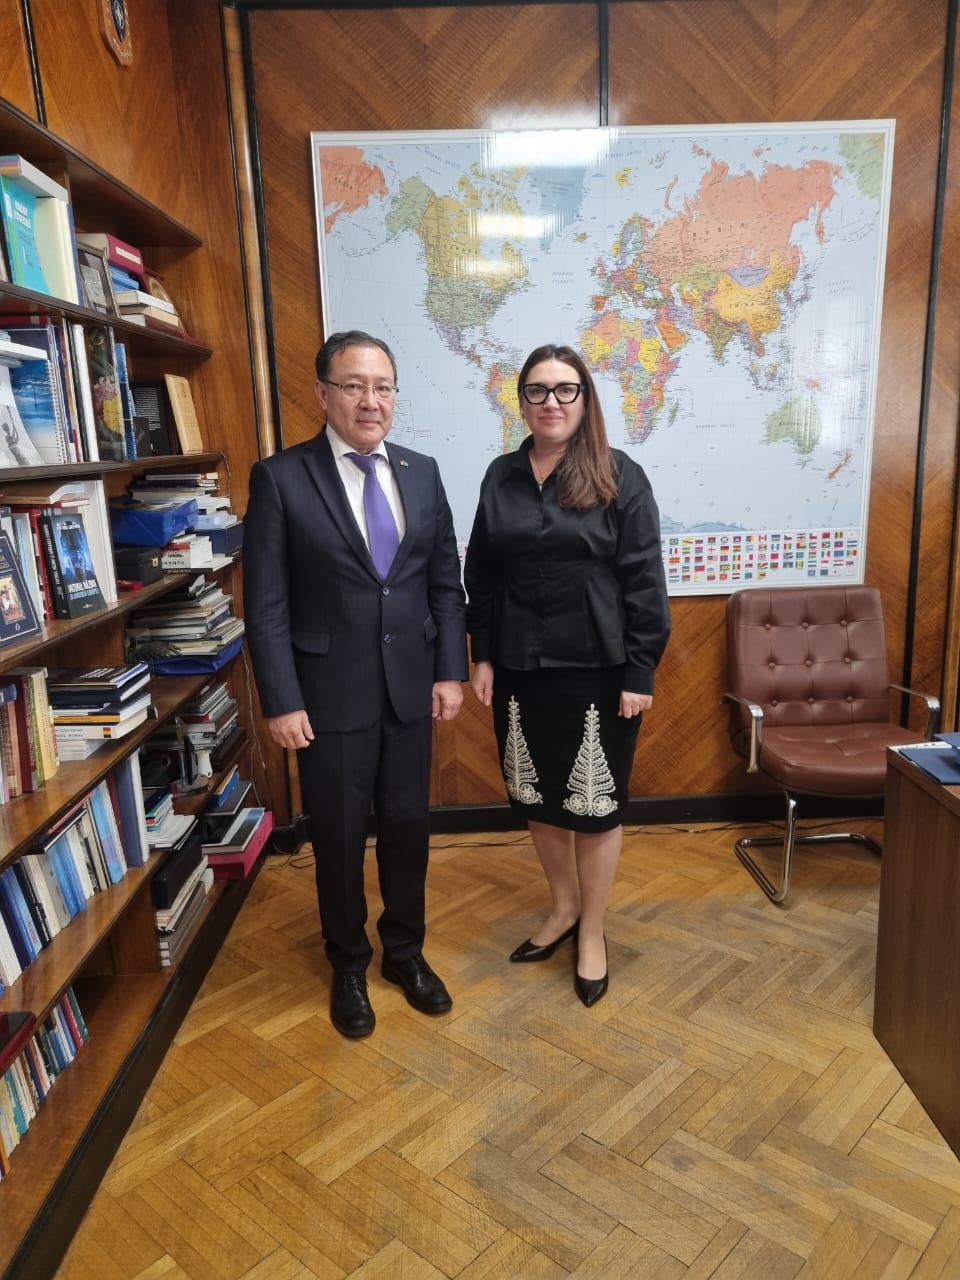 Cu privire la întrevederea cu secretarul de stat din cadrul Ministerului Afacerilor Externe al României